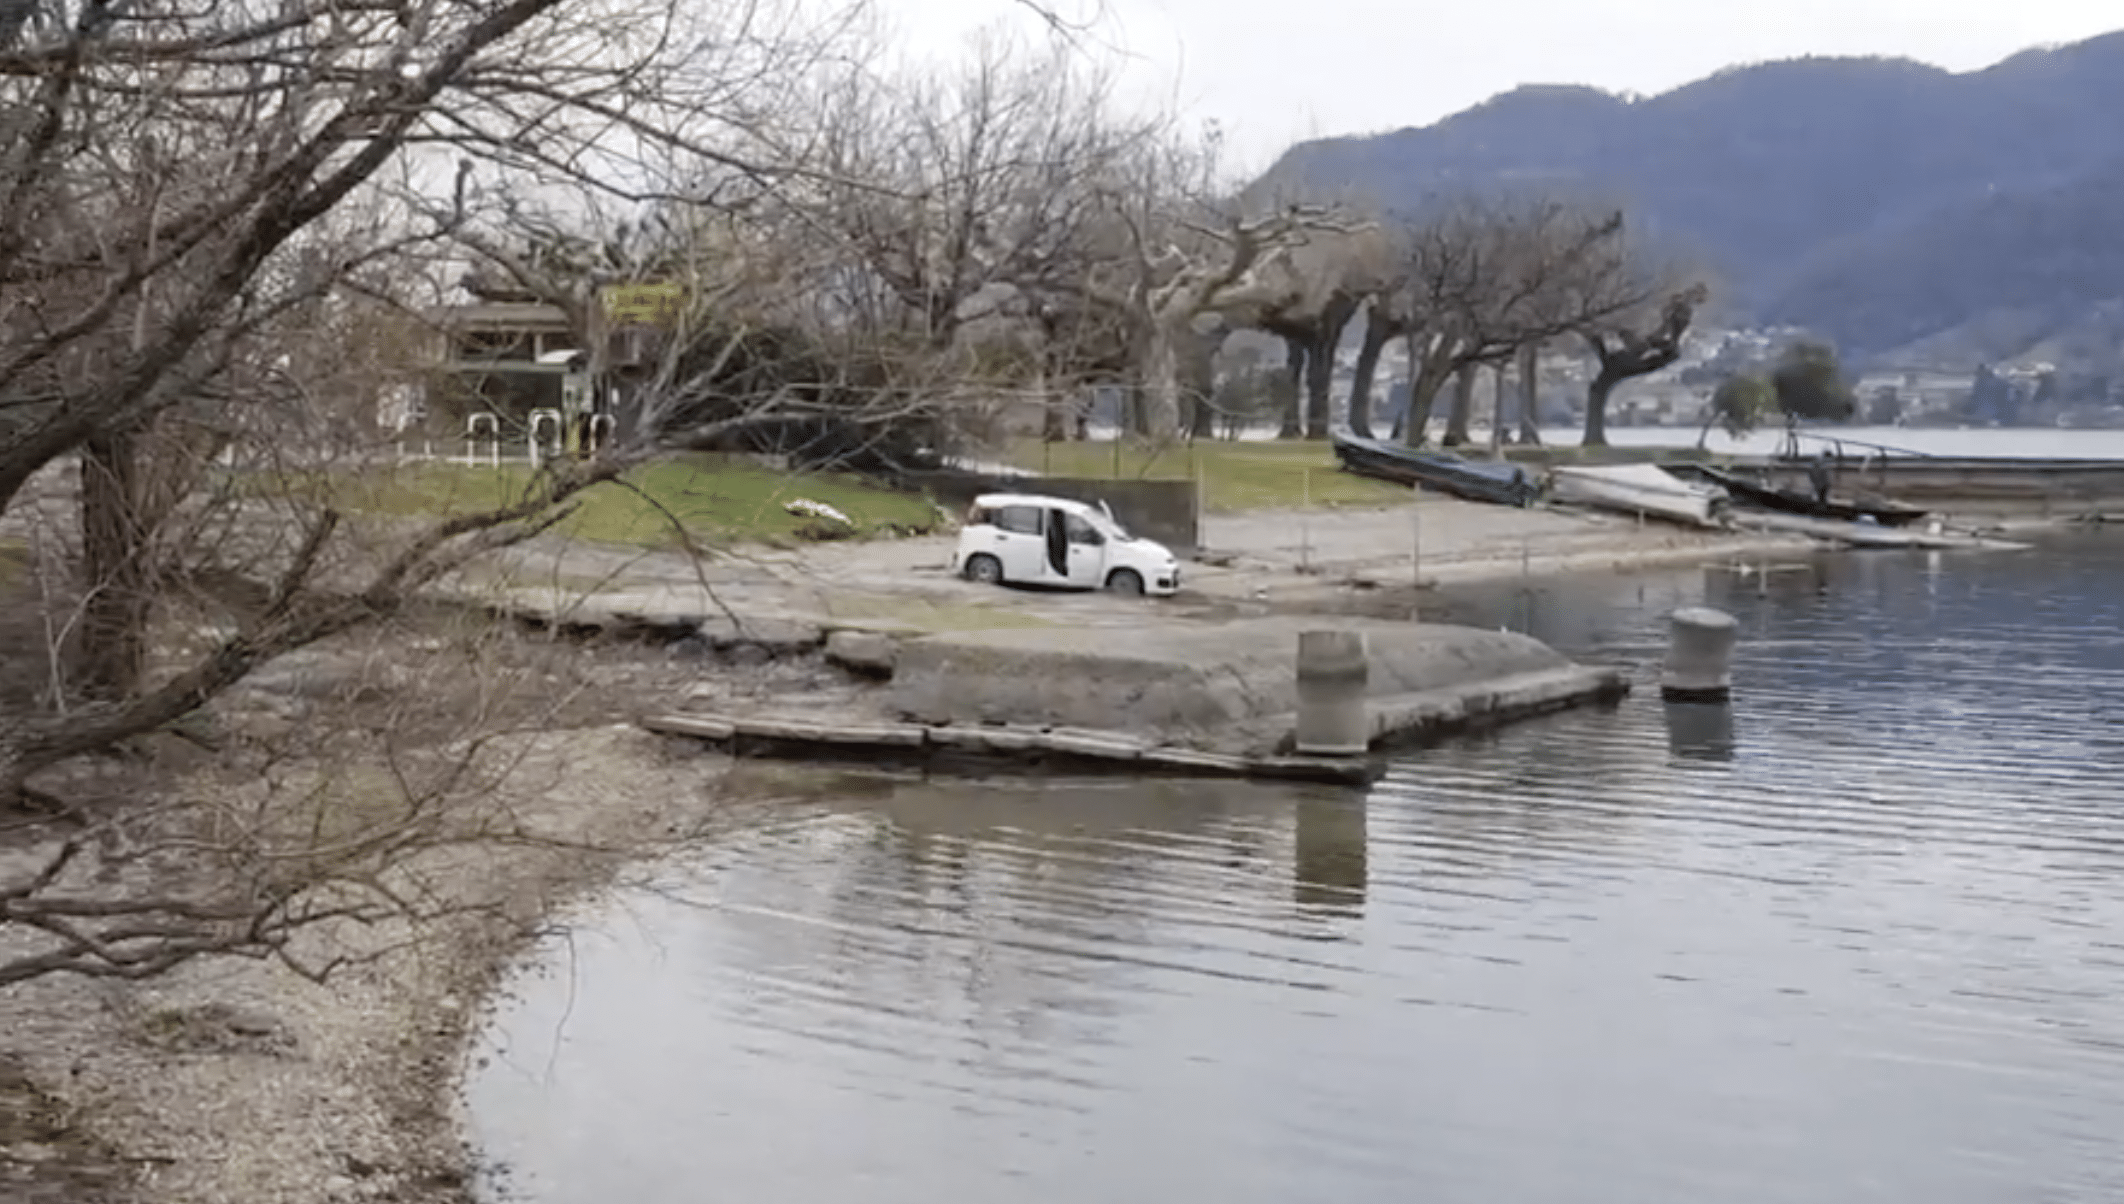 Il cadavere di una donna è stato trovato in un’auto a Lecco in riva a un lago. I sommozzatori stanno cercando altri corpi in acqua,